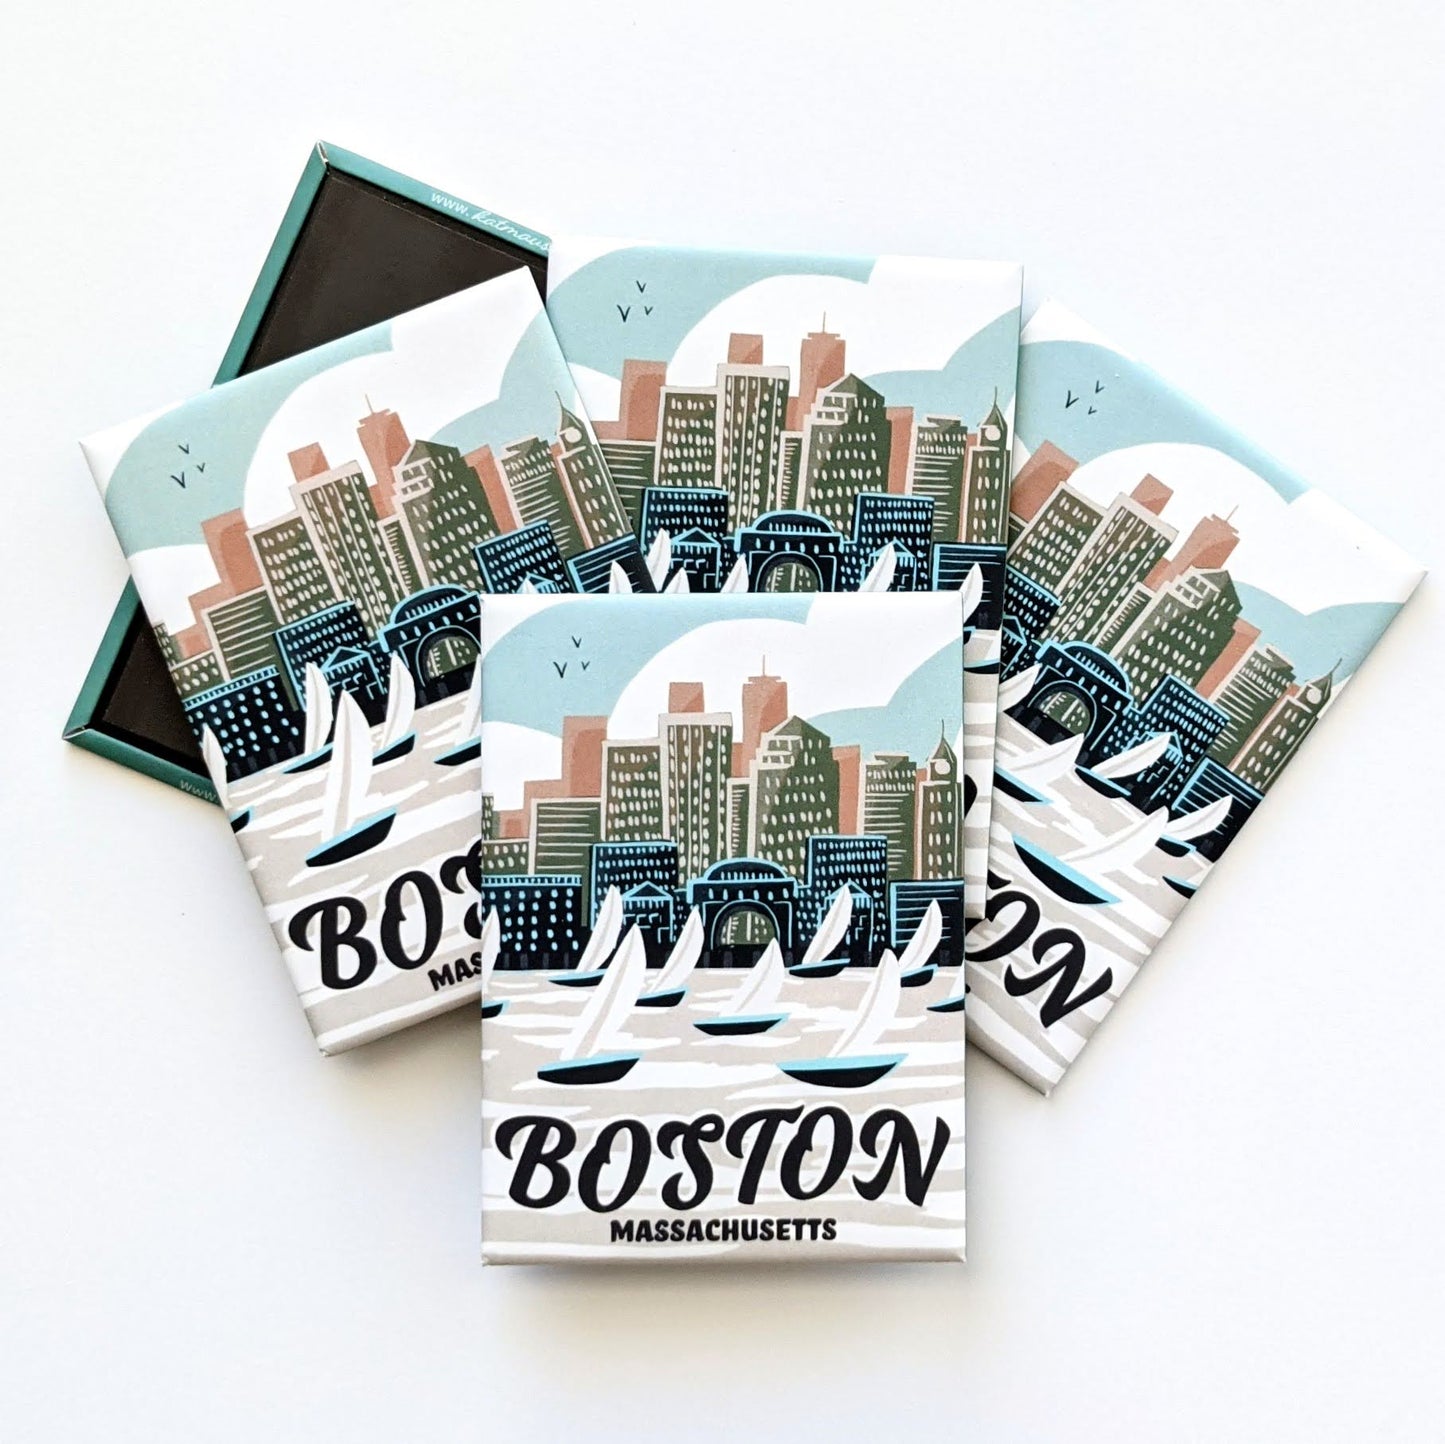 Boston, Massachusetts Magnet